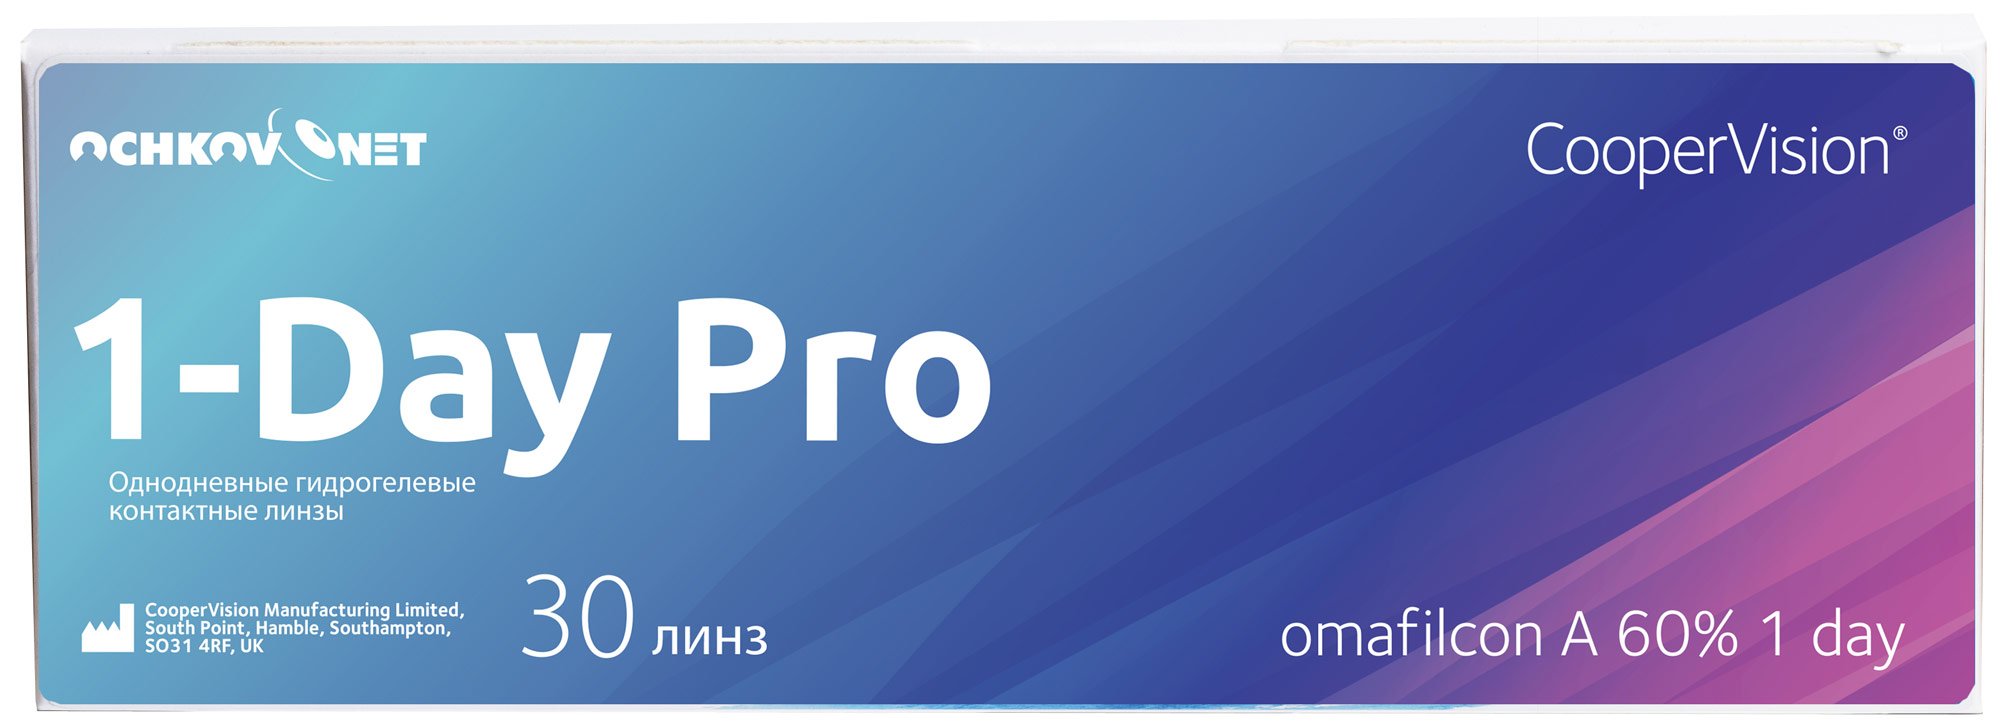 Купить Контактные линзы Ochkov.Net 1-Day Pro 30 линз 8.7, -5.25